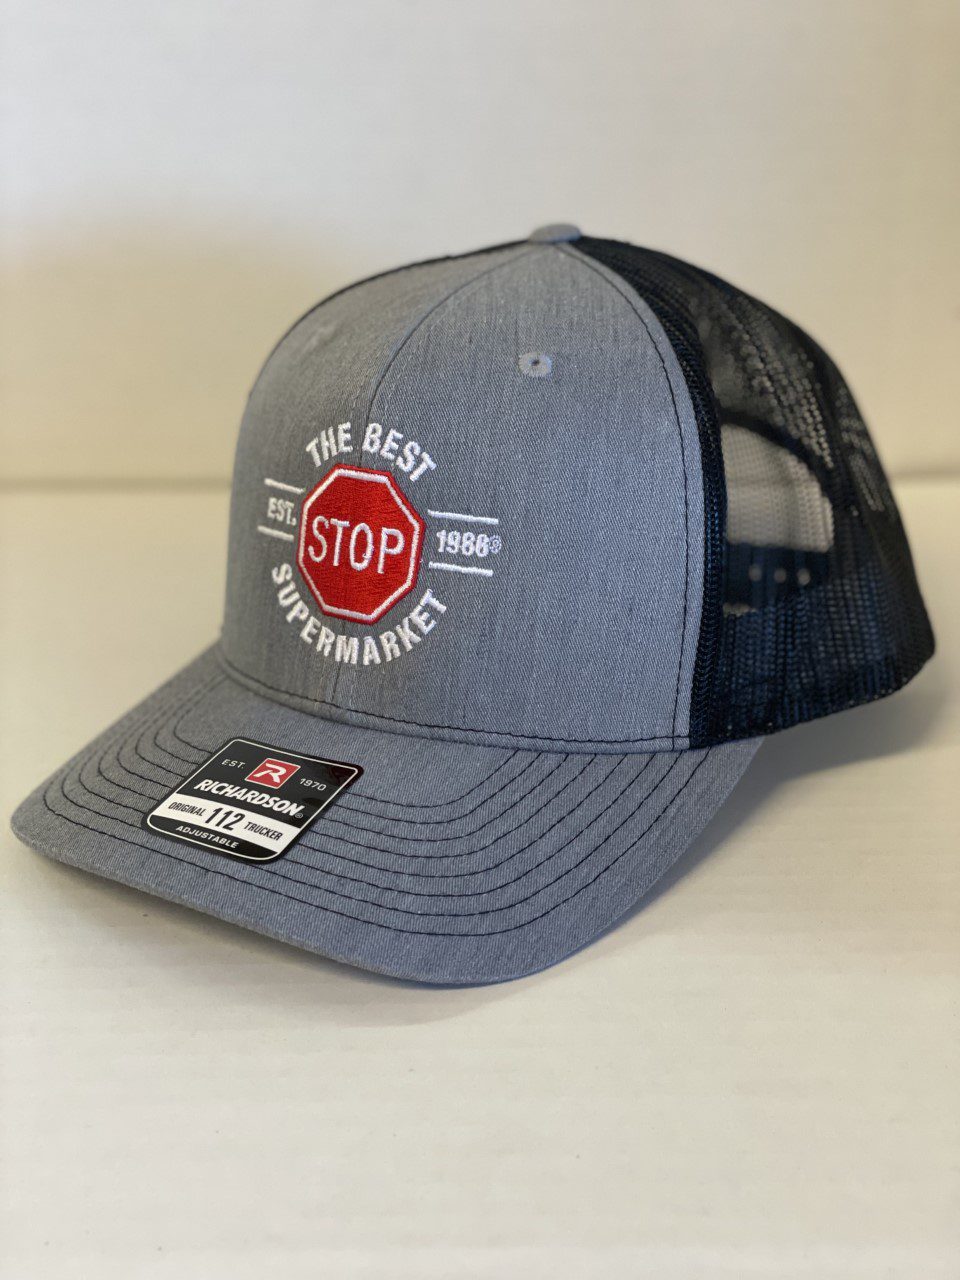 Best Stop Hats | The Best Stop in Scott